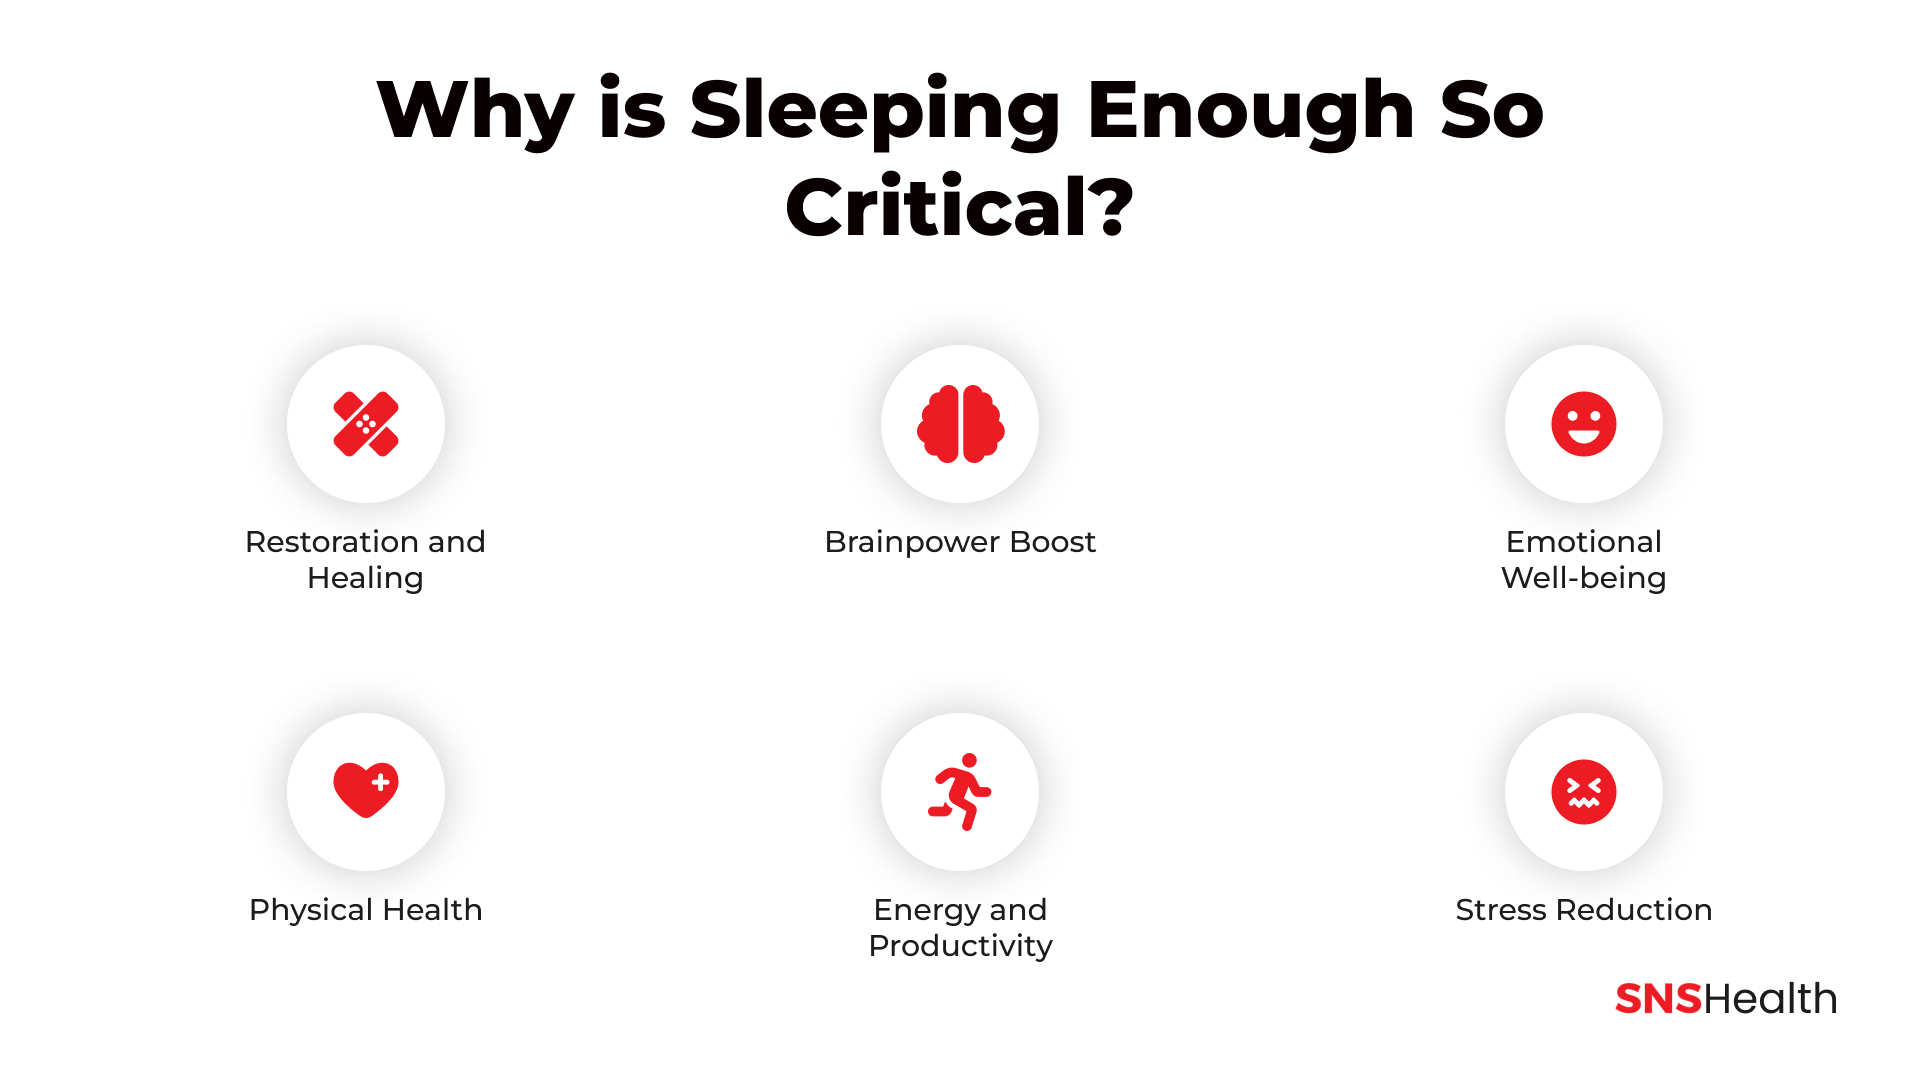 Warum ist ausreichend Schlaf so wichtig?